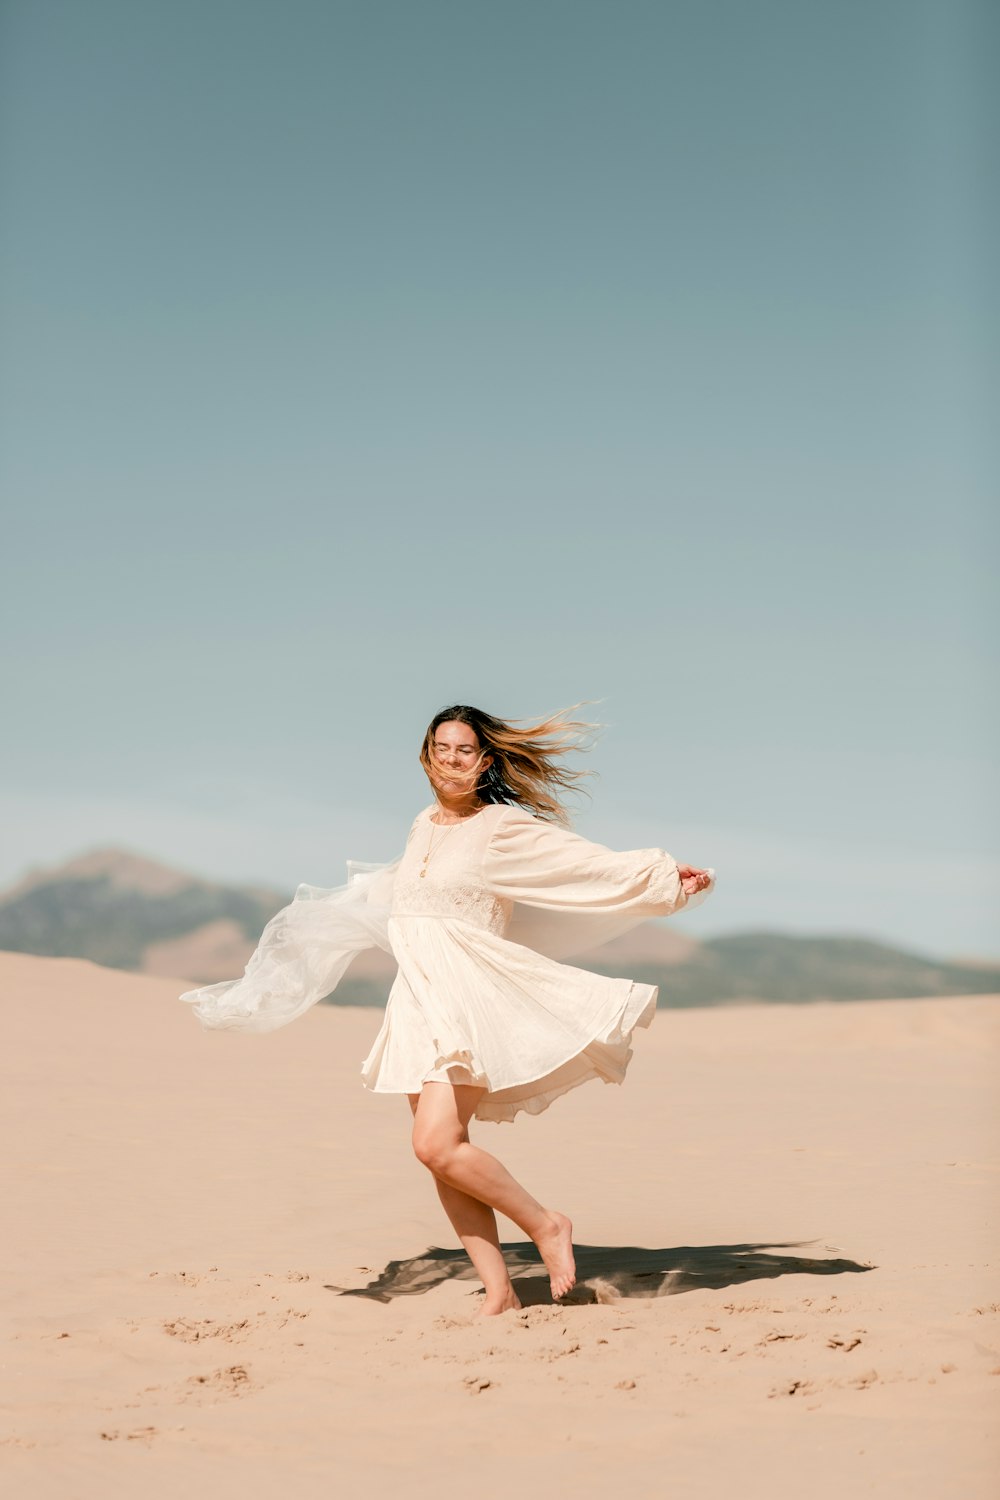 사막에 서 있는 흰 드레스를 입은 여자